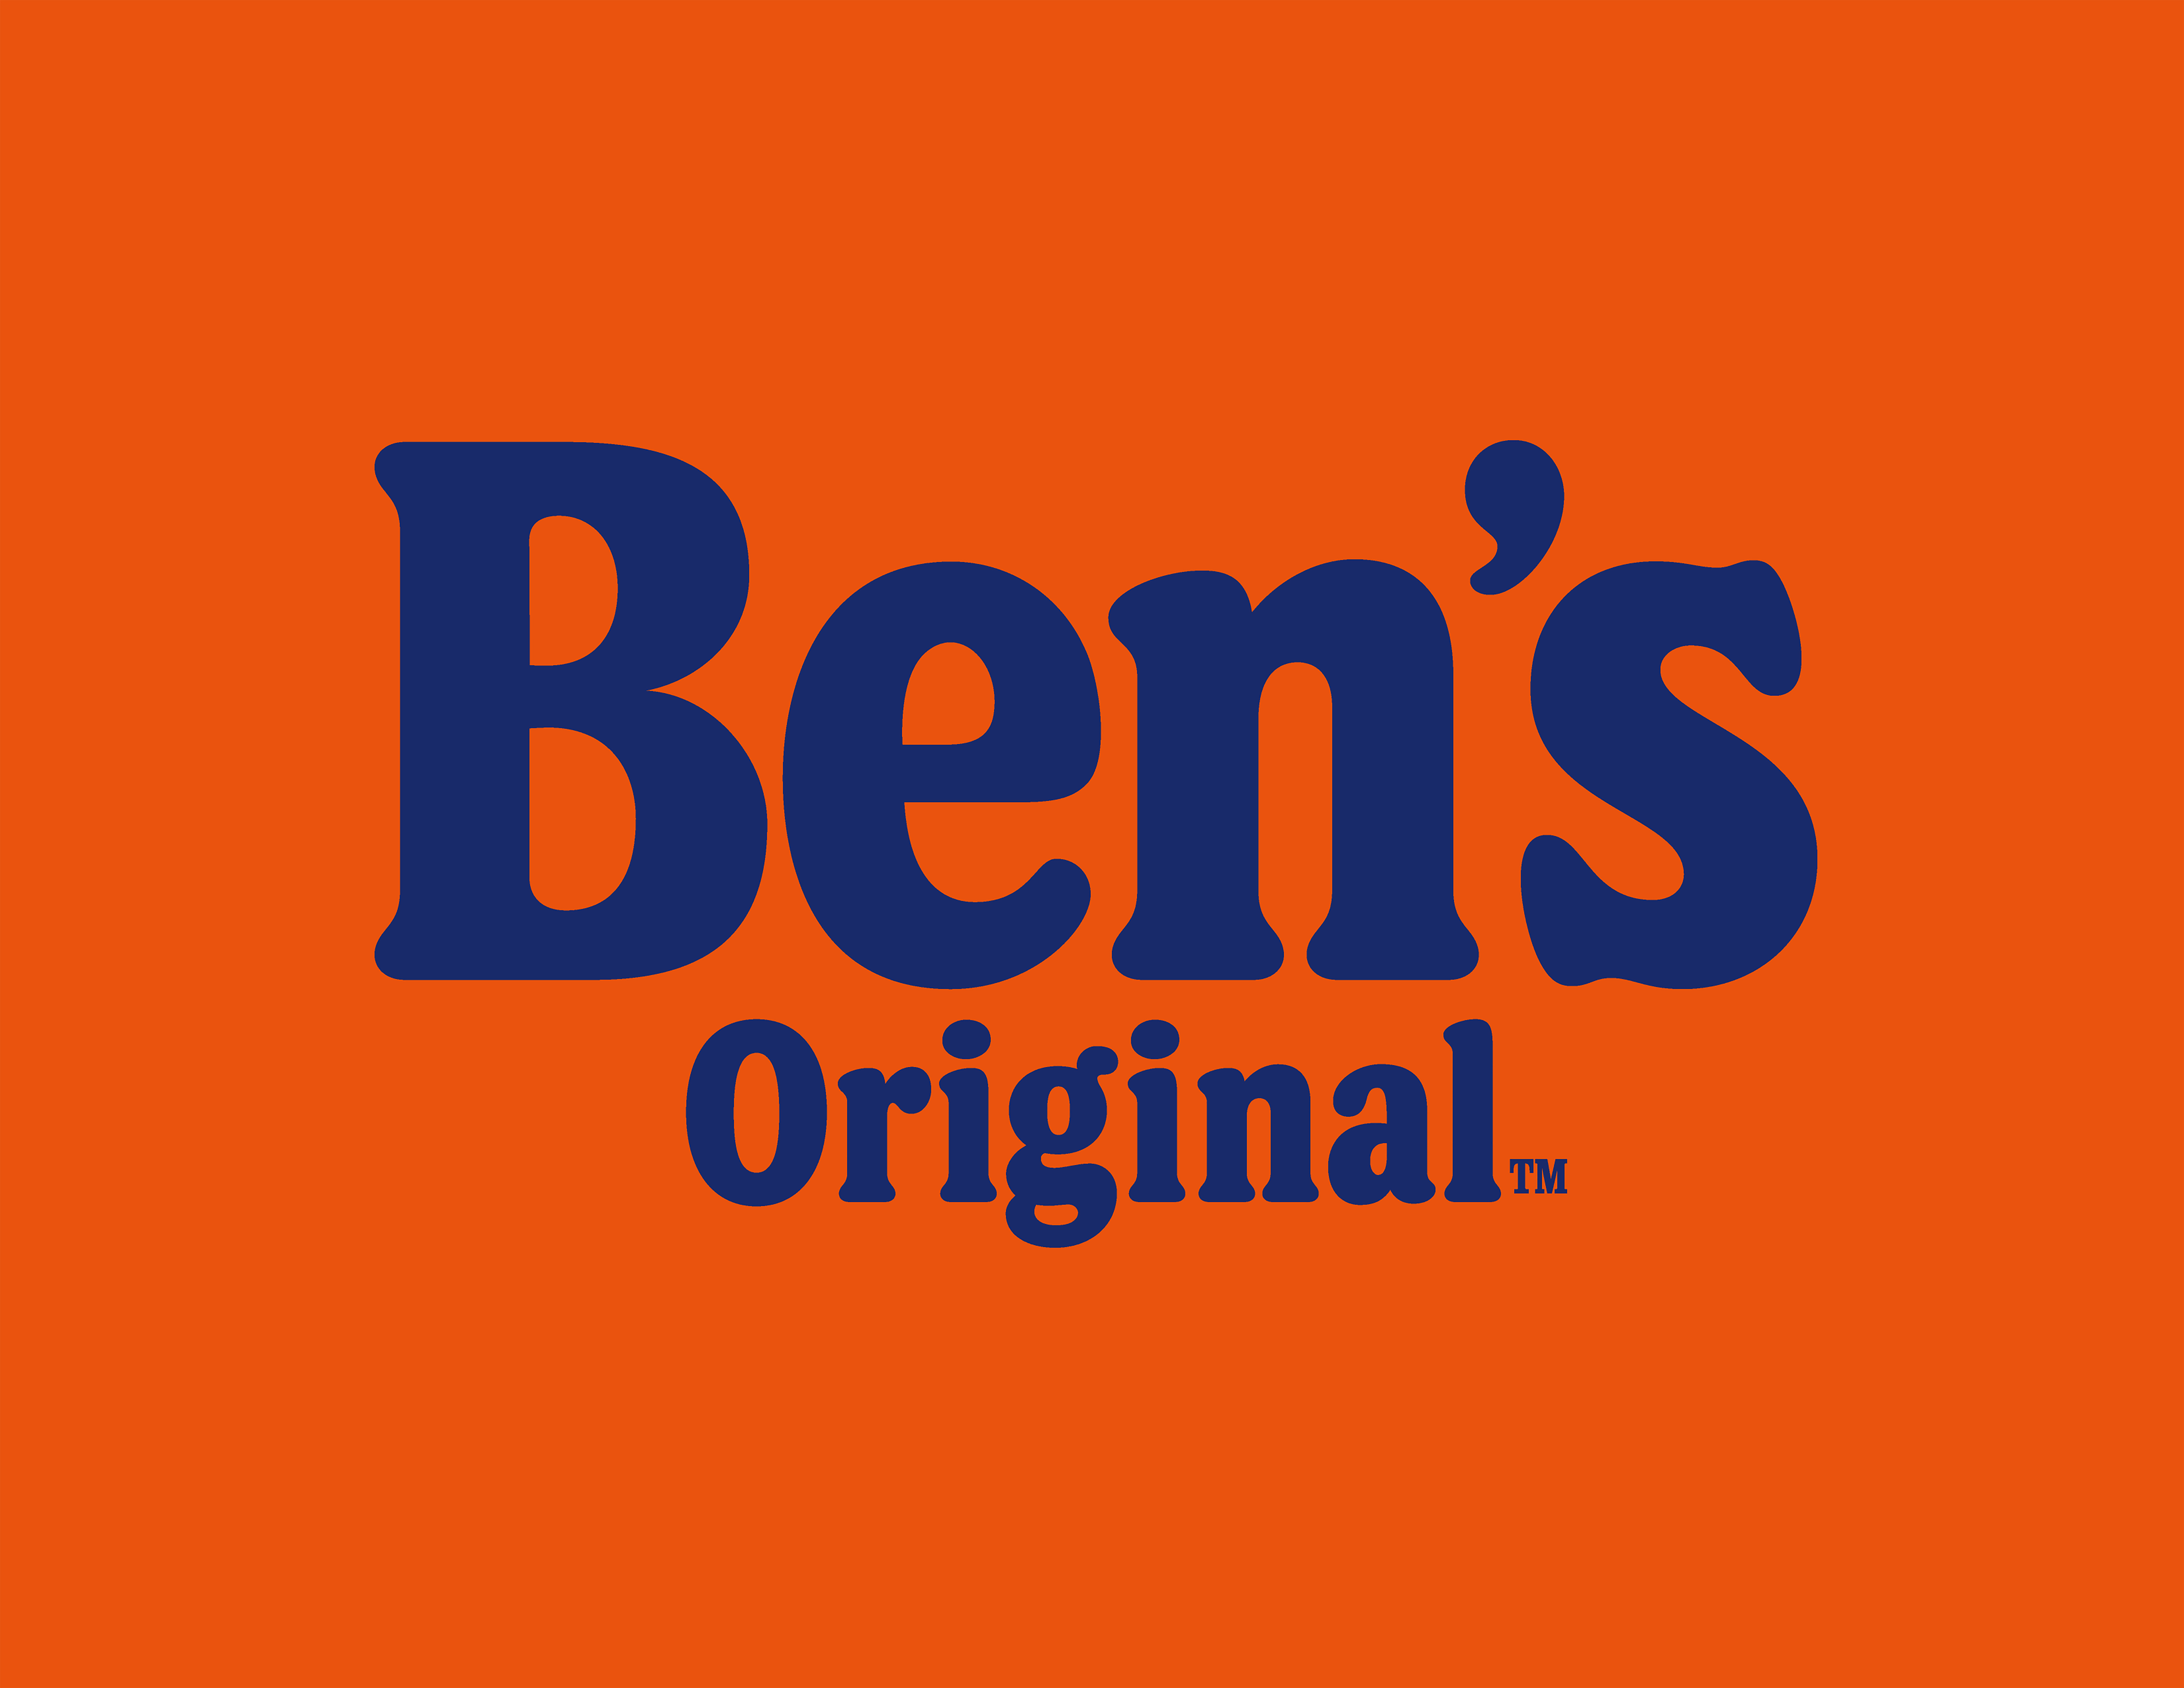 The new logo/name of Ben’s Original